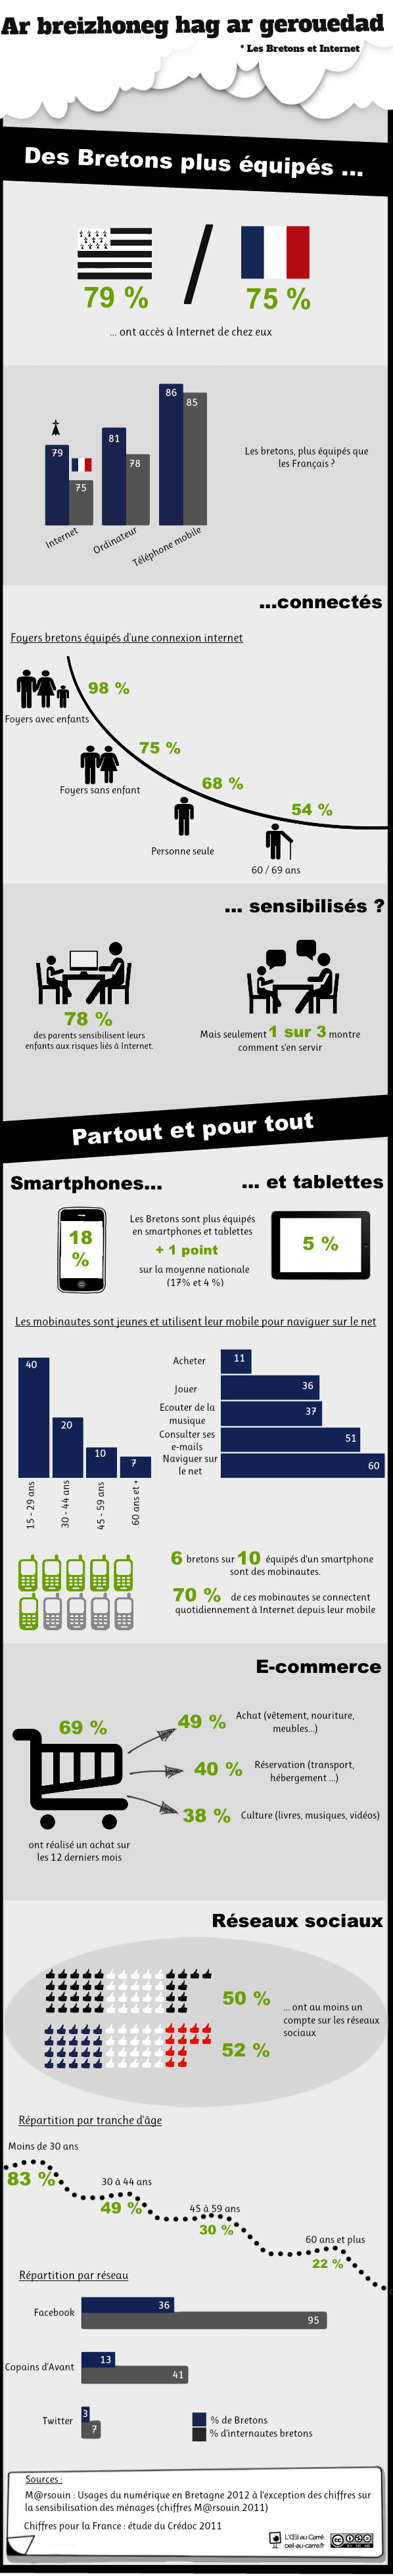 [Infographie] Les Bretons et Internet